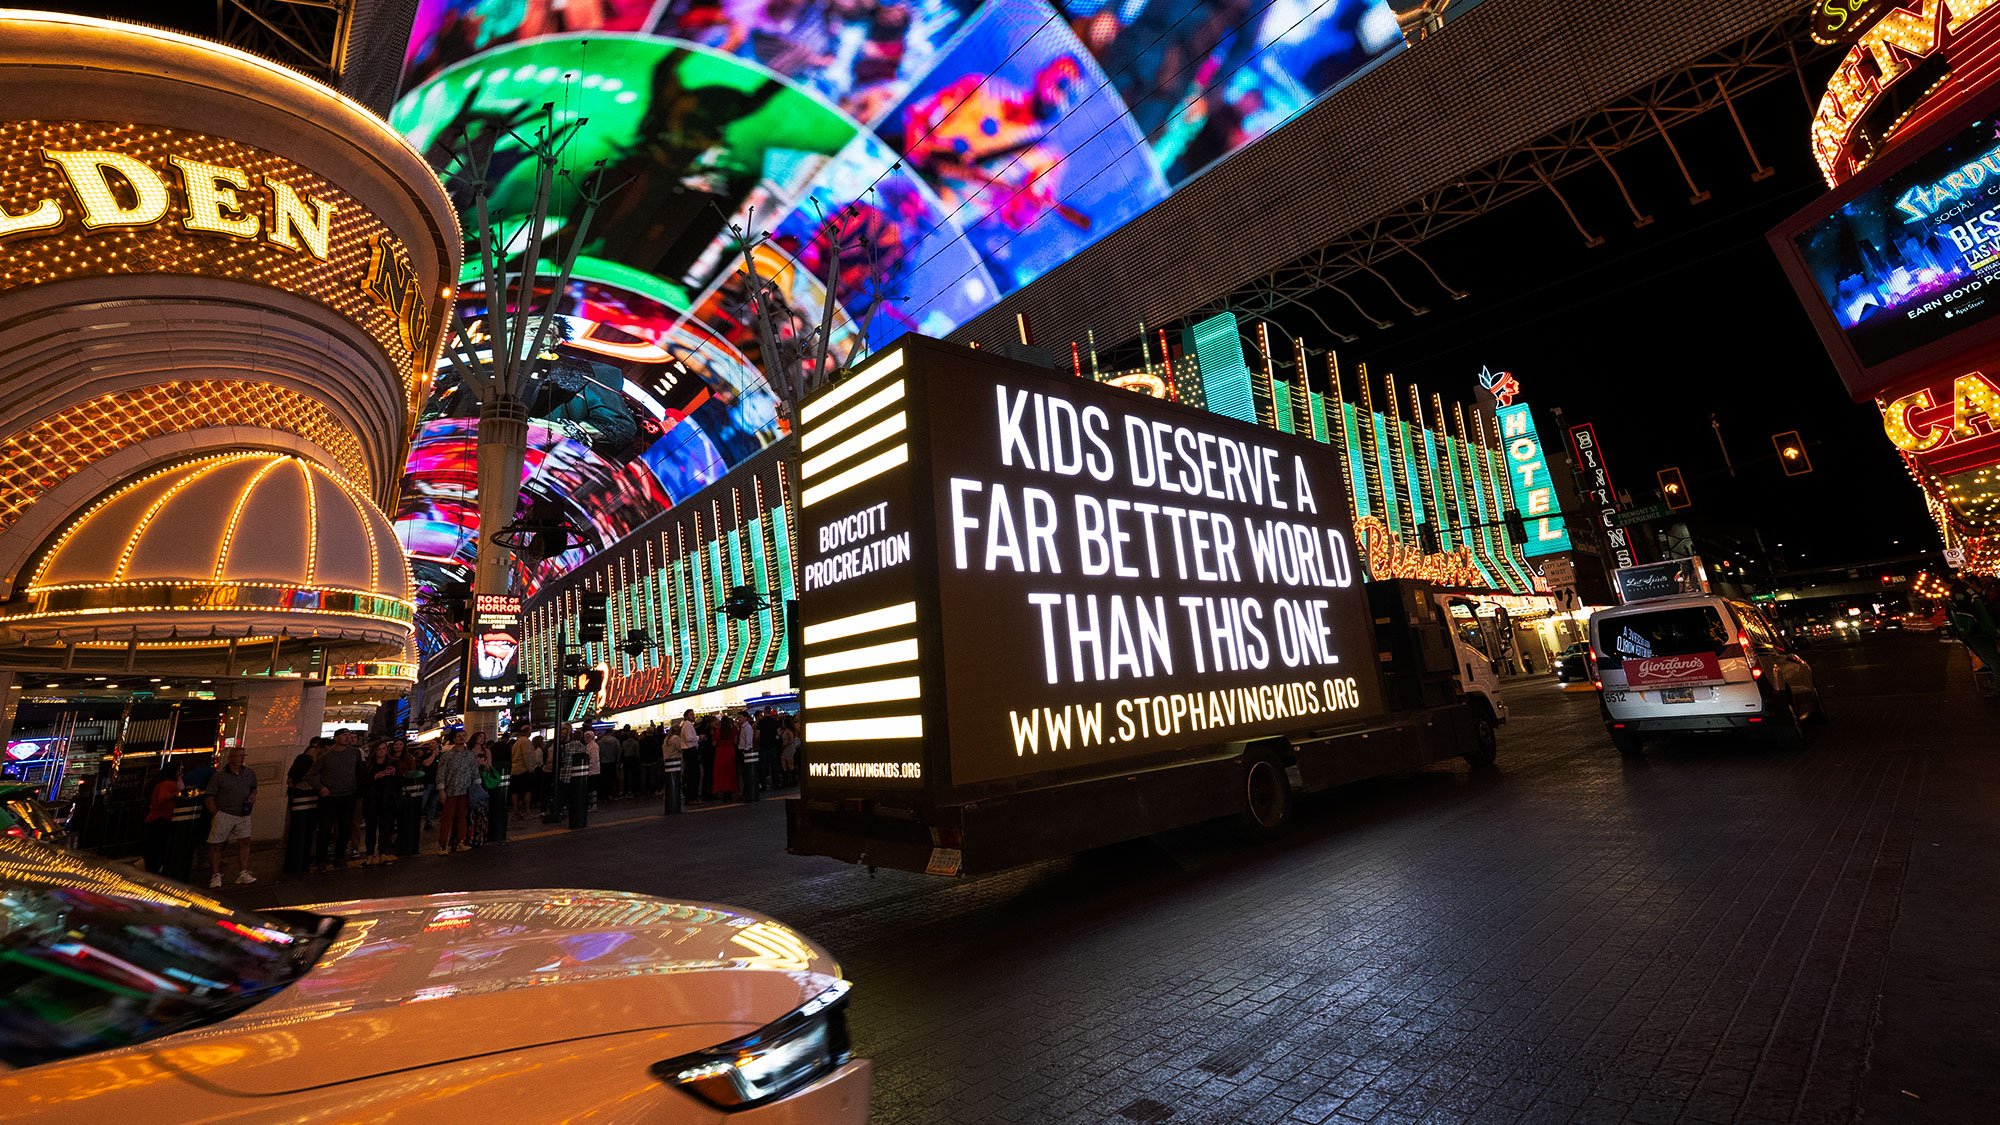 kids-deserve-a-far-better-world-than-this-one-truck.jpg